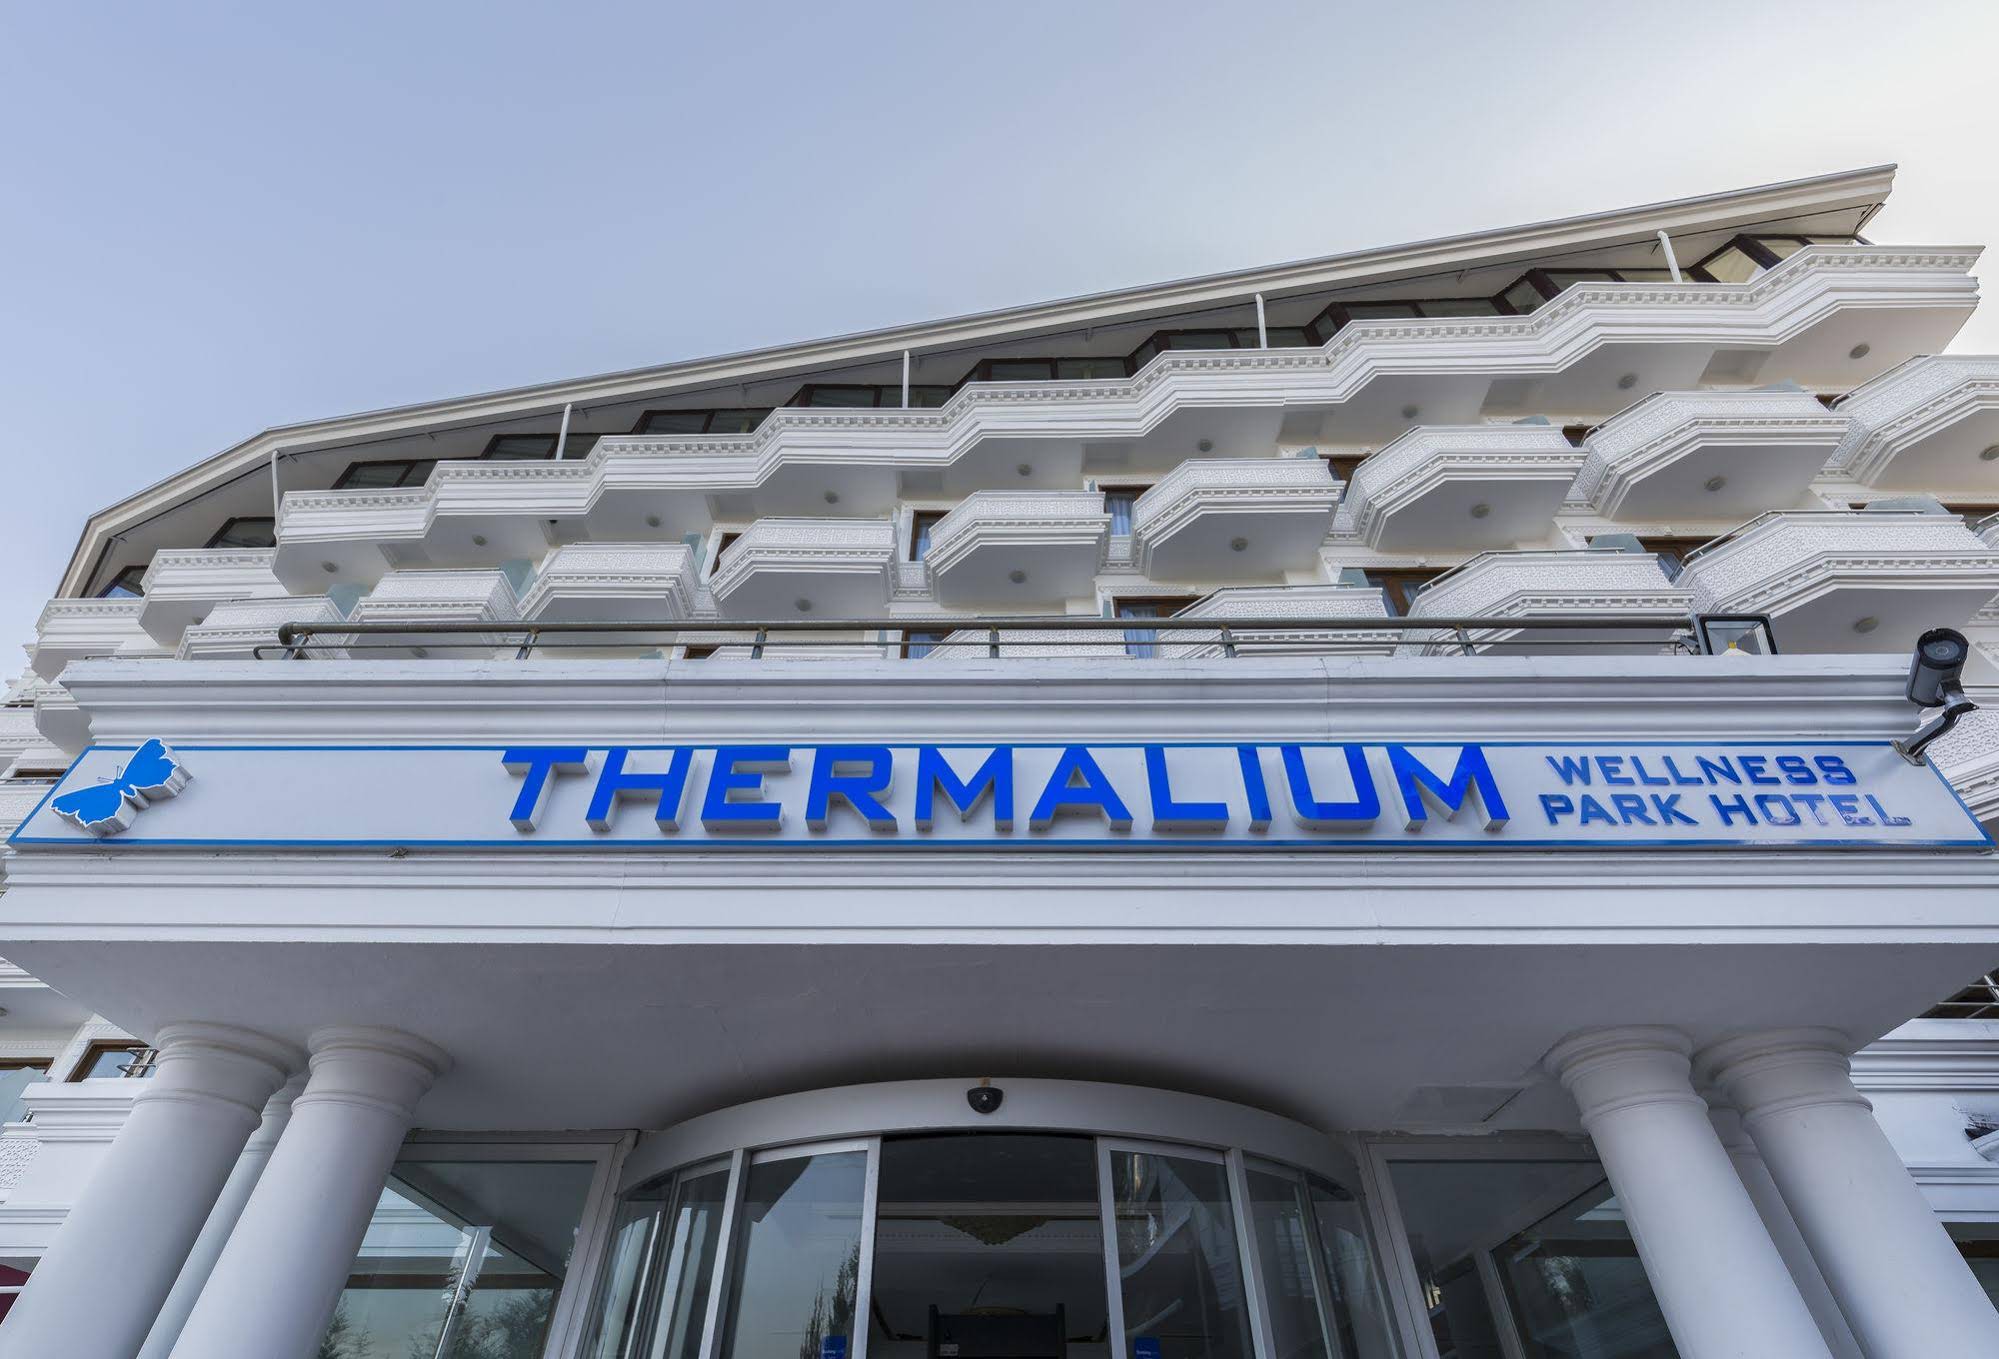 Thermalium Wellness Park Hotel